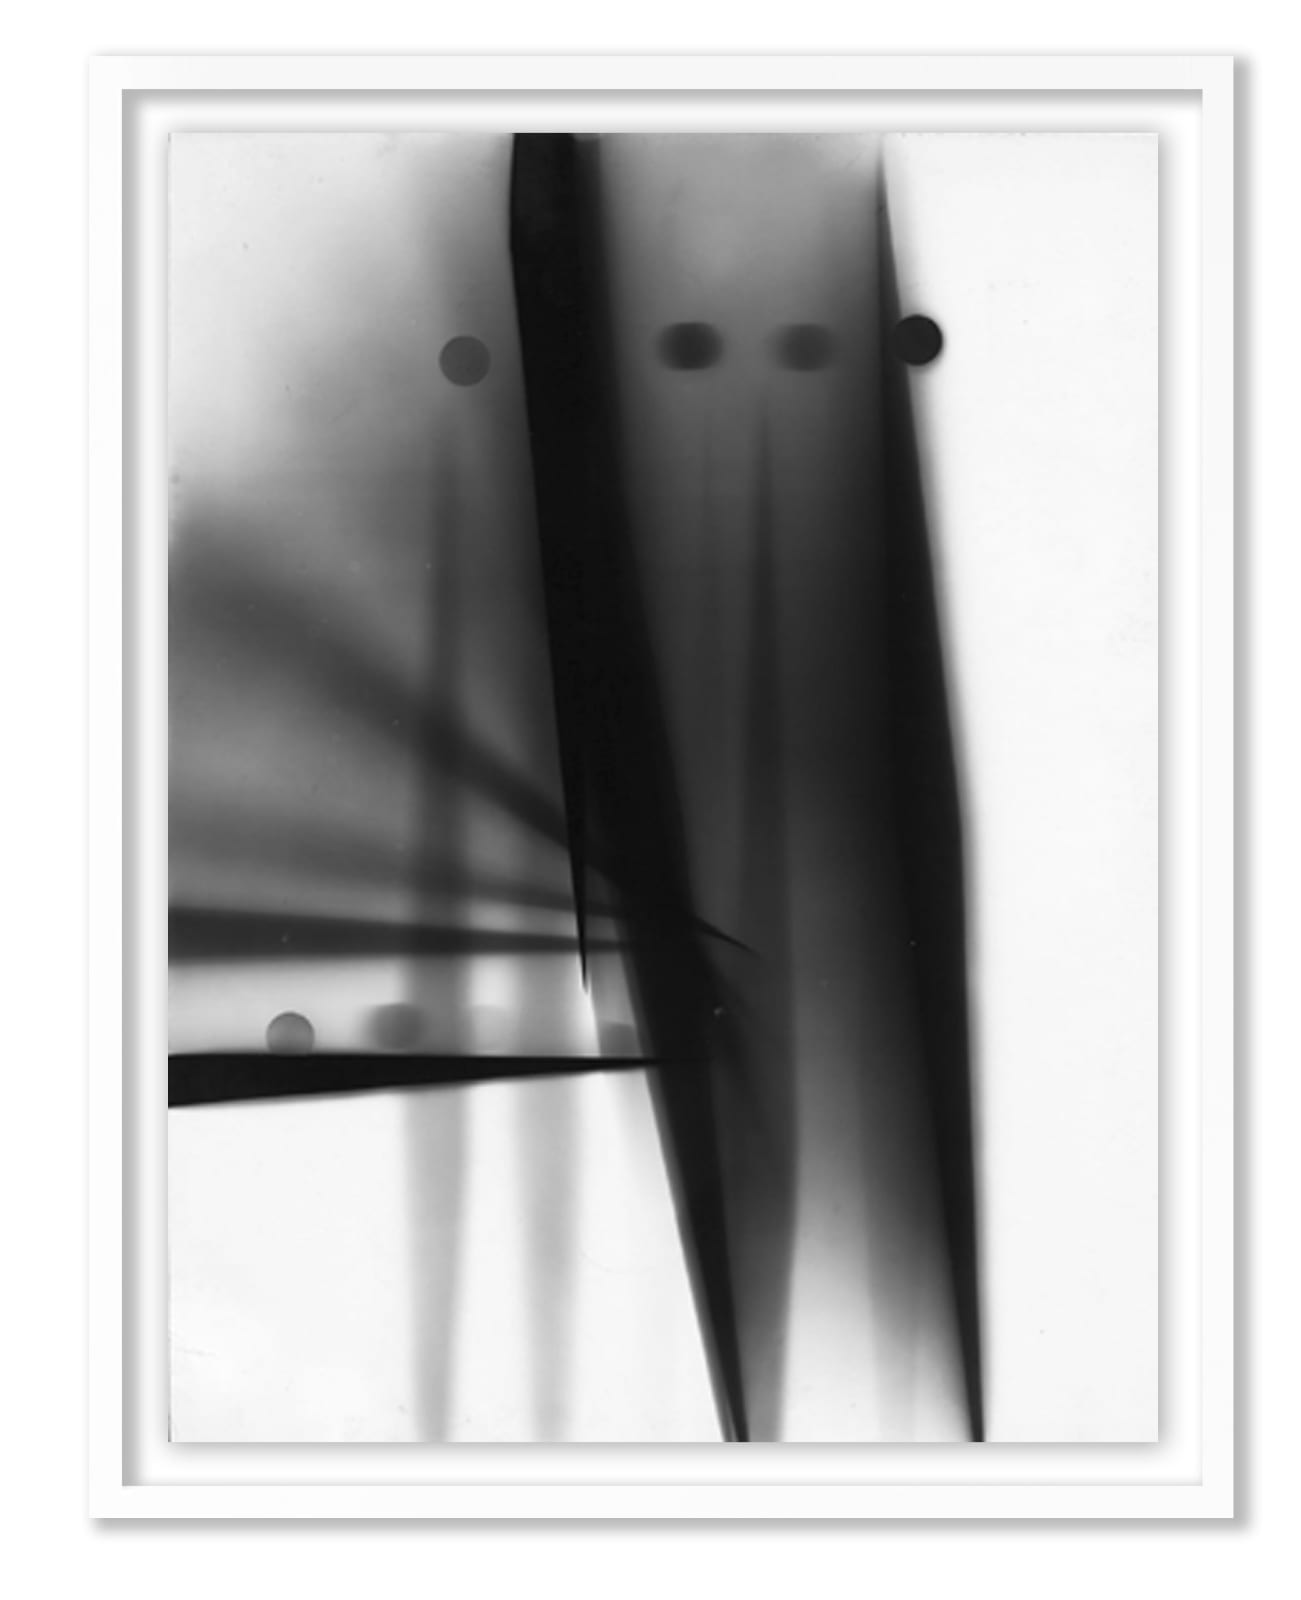 William Klein, Black knives, 1952